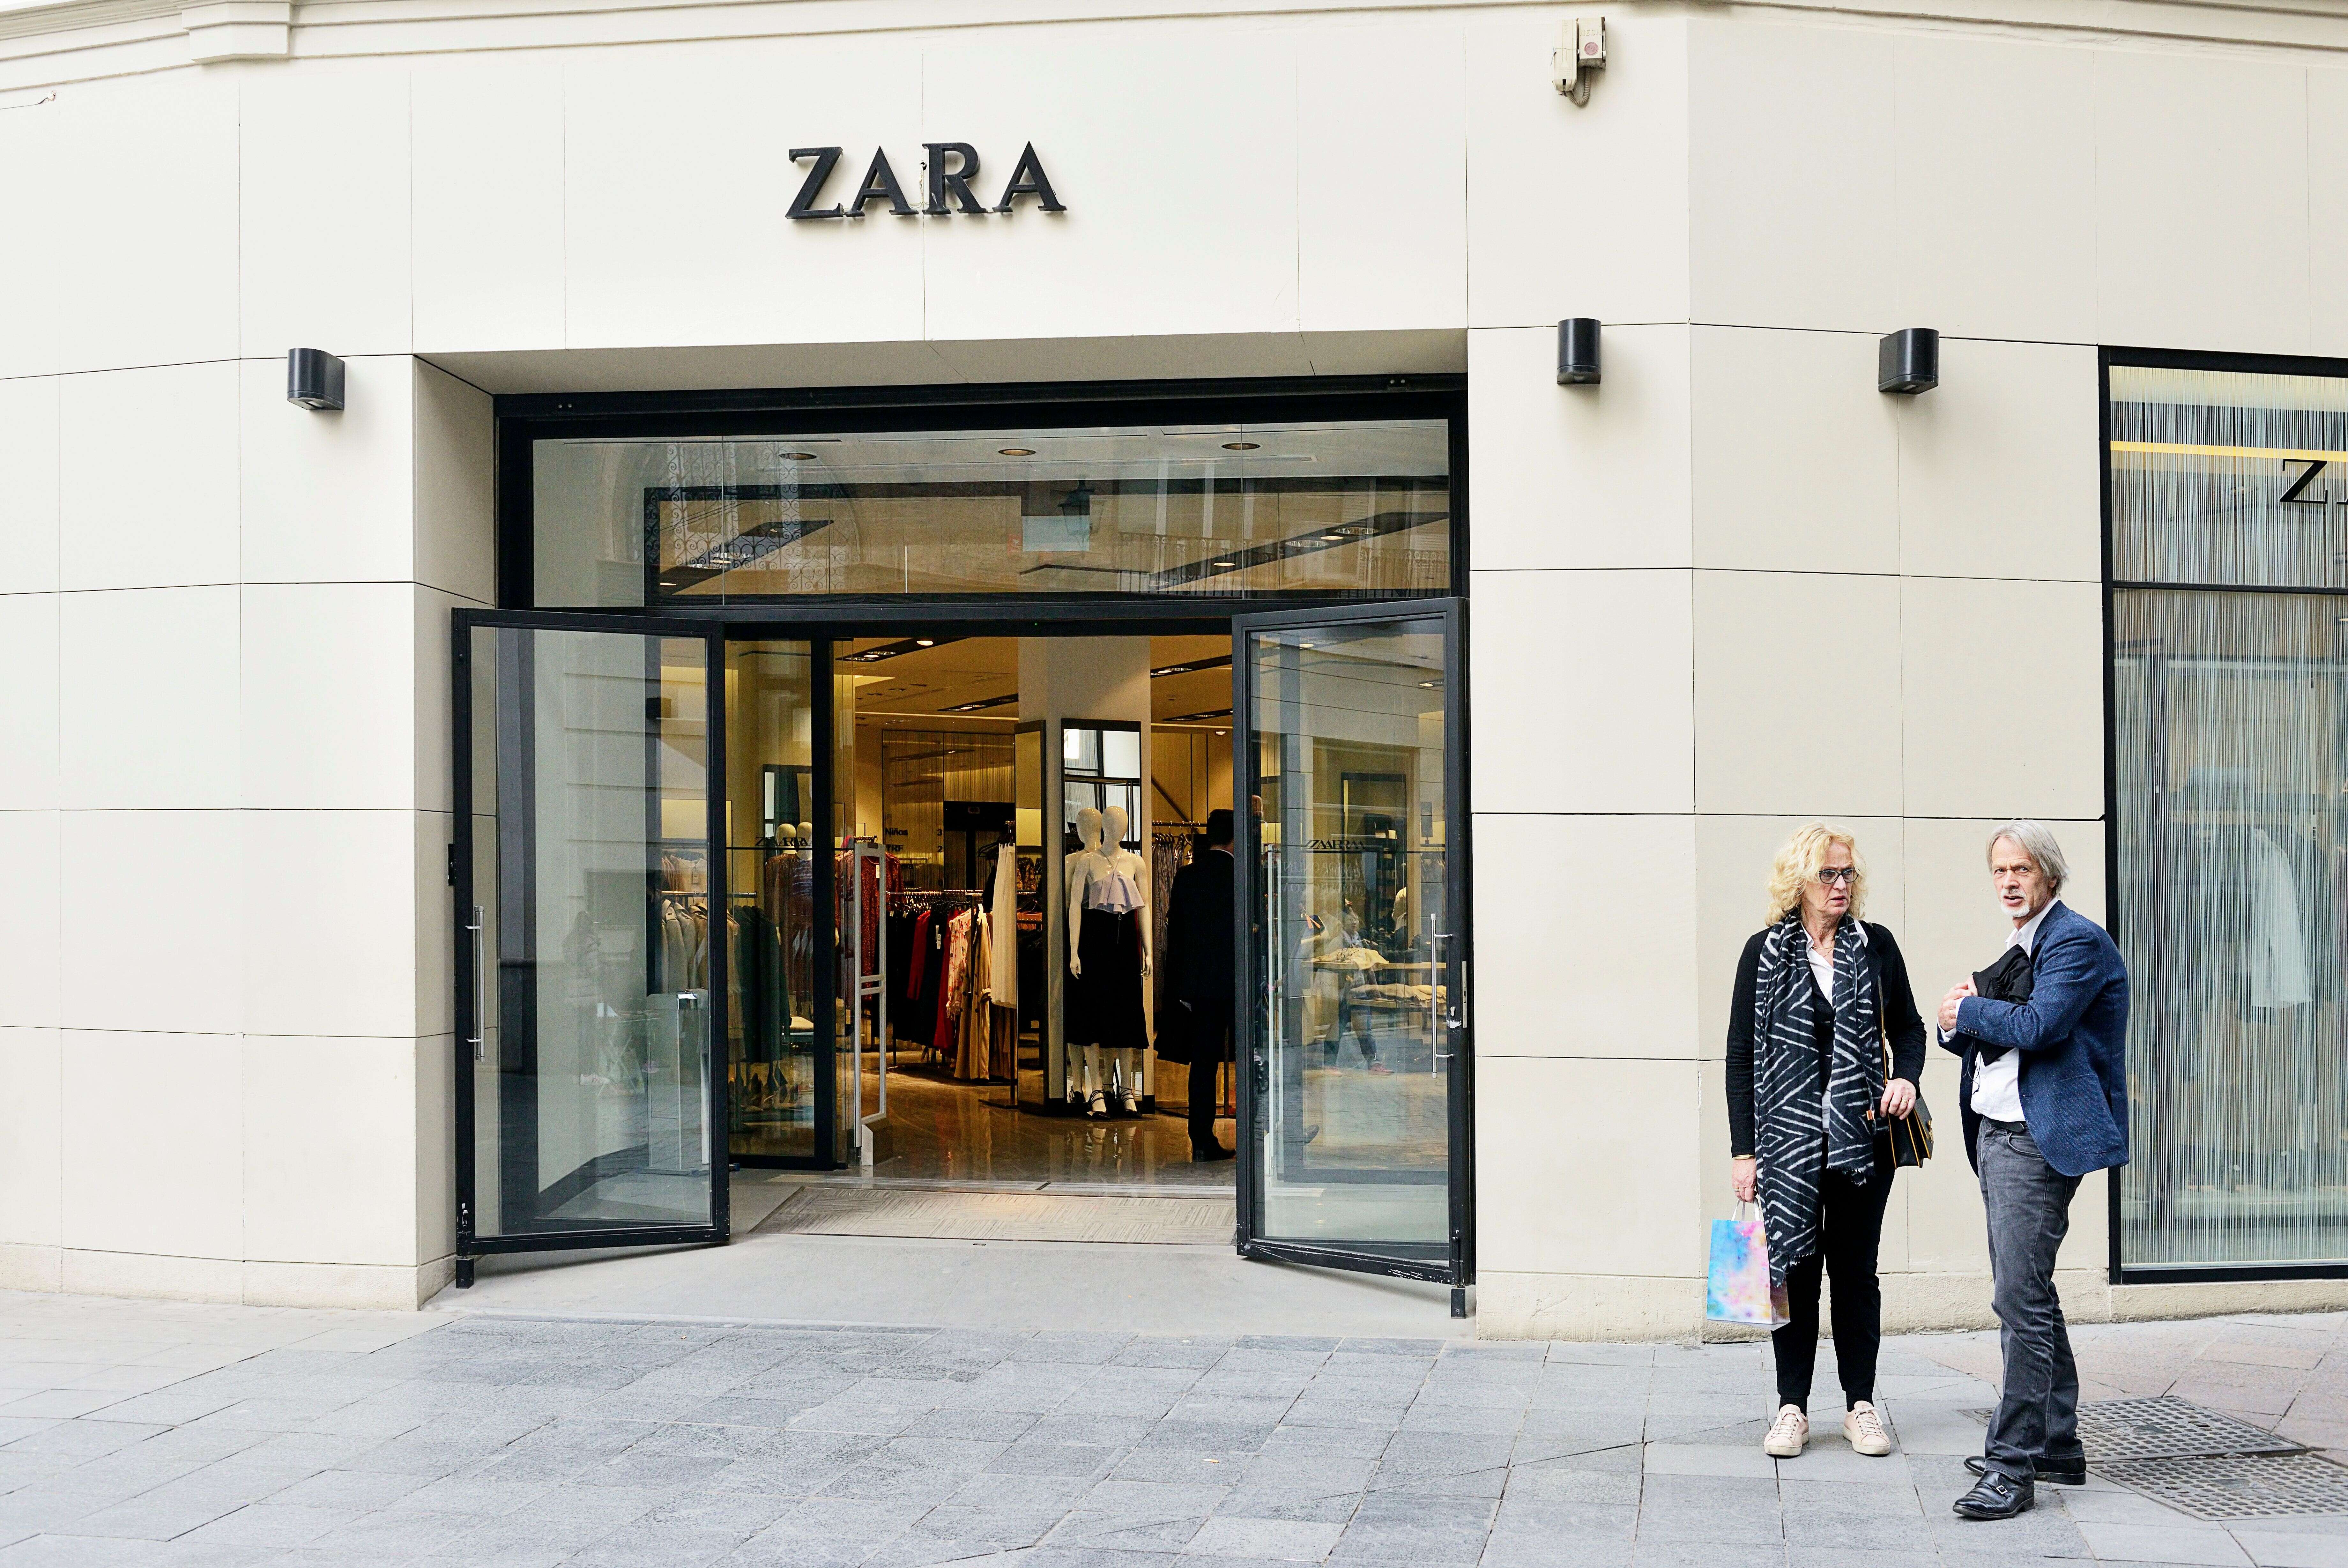 Travail des Ouïghours: 4 géants du textile visés par une enquête en France (photo d'illustration d'une boutique Zara en Espagne)